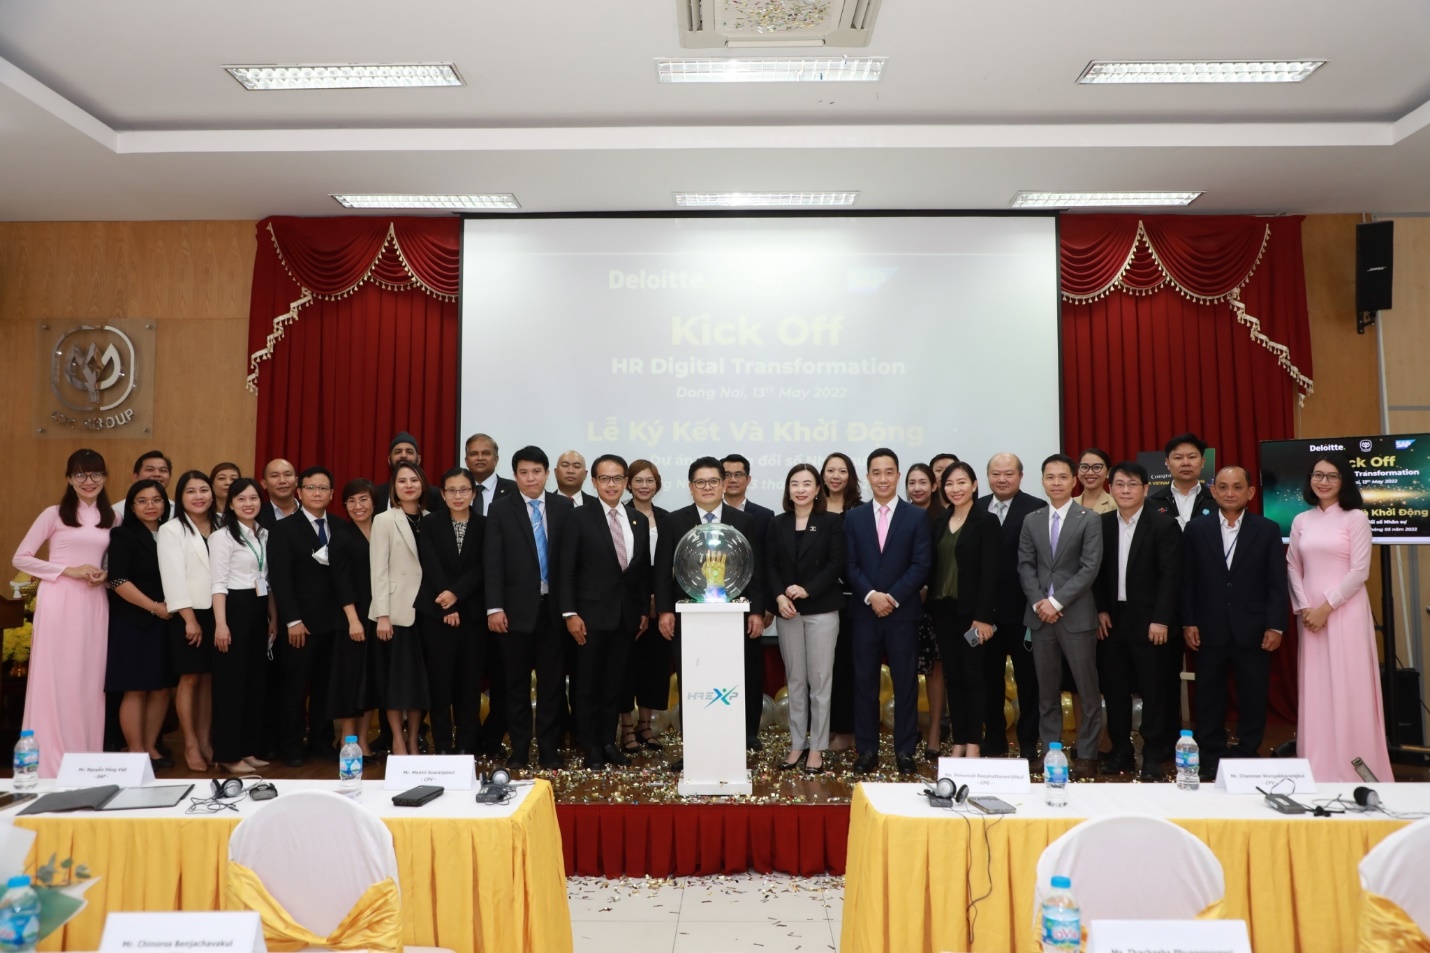 C.P. Việt Nam chuyển đổi số công tác Nhân sự với giải pháp SAP SuccessFactors - Ảnh 5.